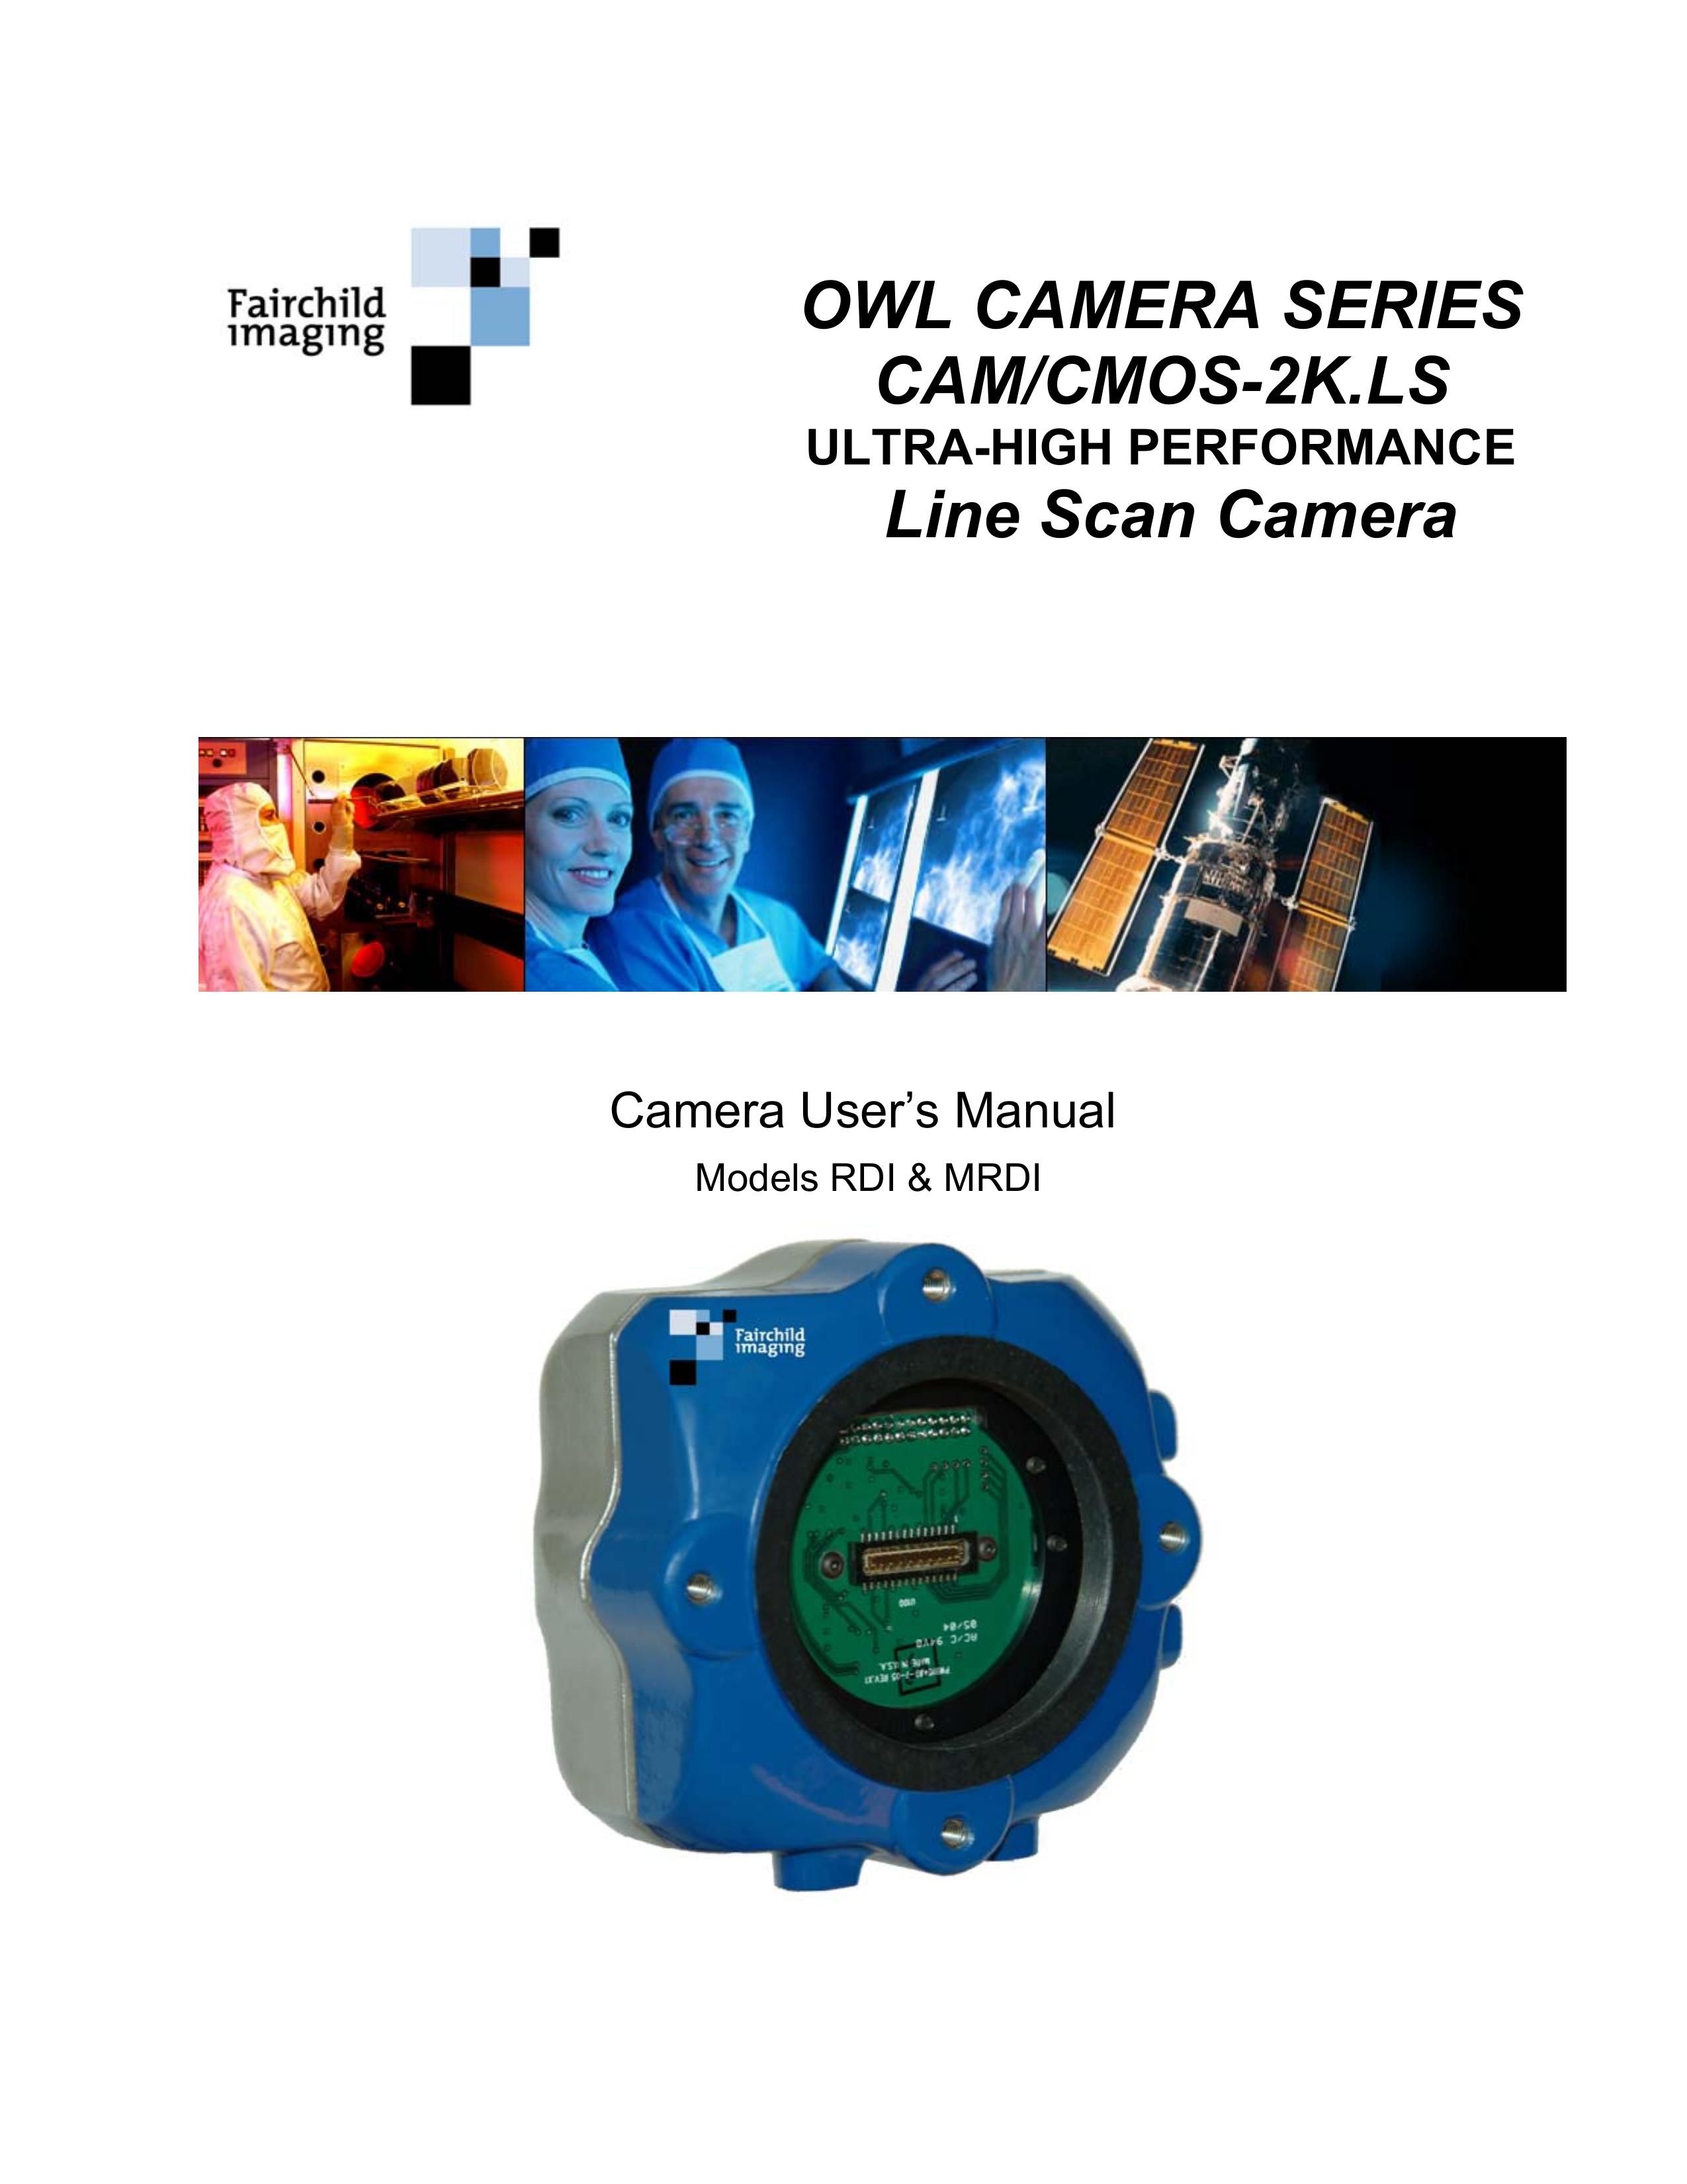 Fairchild CAM/CMOS-2K.LS Digital Camera User Manual